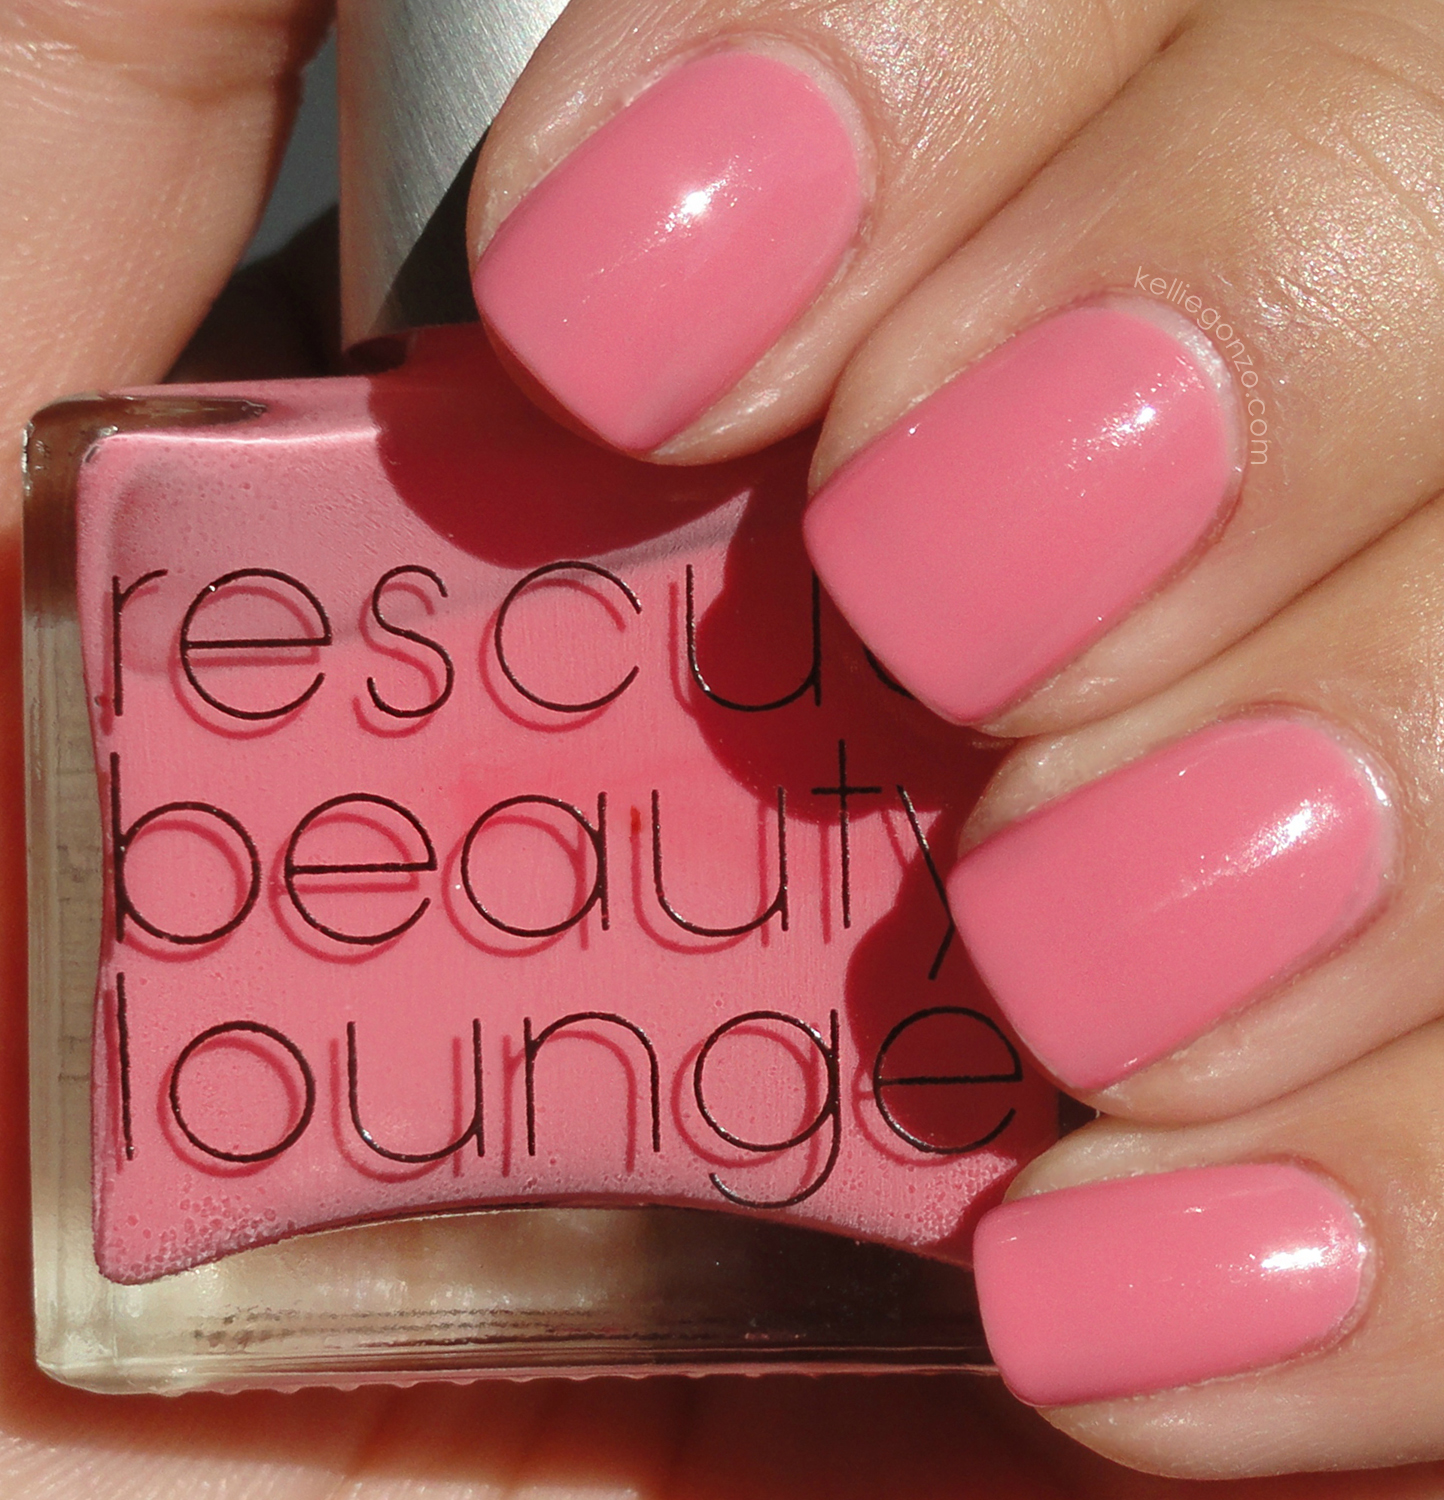 KellieGonzo Rescue Beauty Lounge Pepto Pink